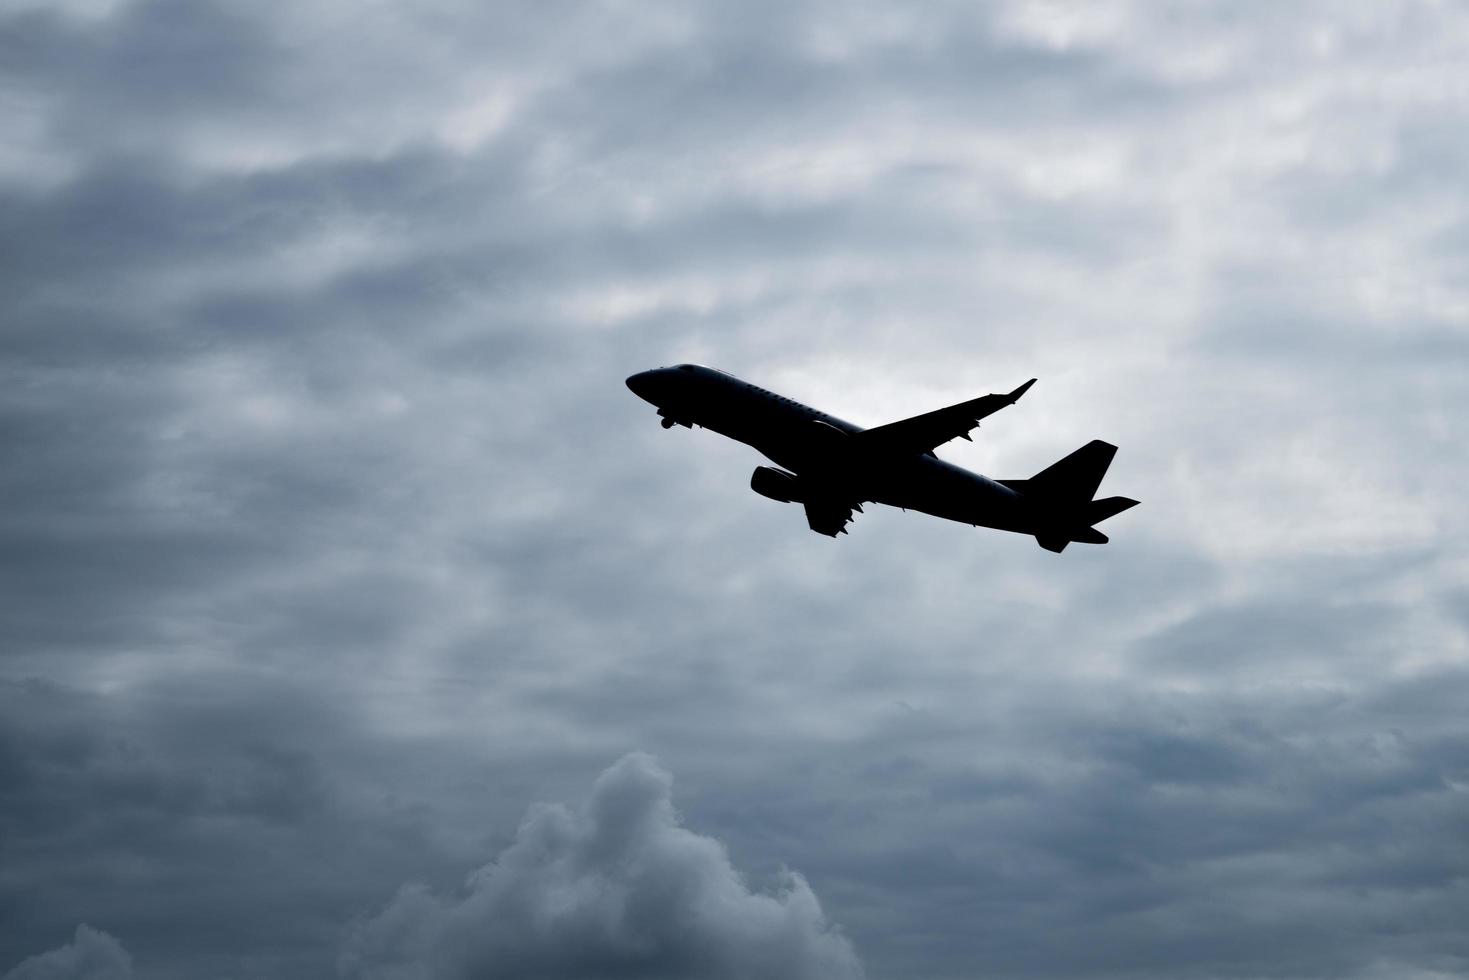 la silhouette dell'aereo vola sopra il cielo con sfondo nuvoloso nuvoloso. foto